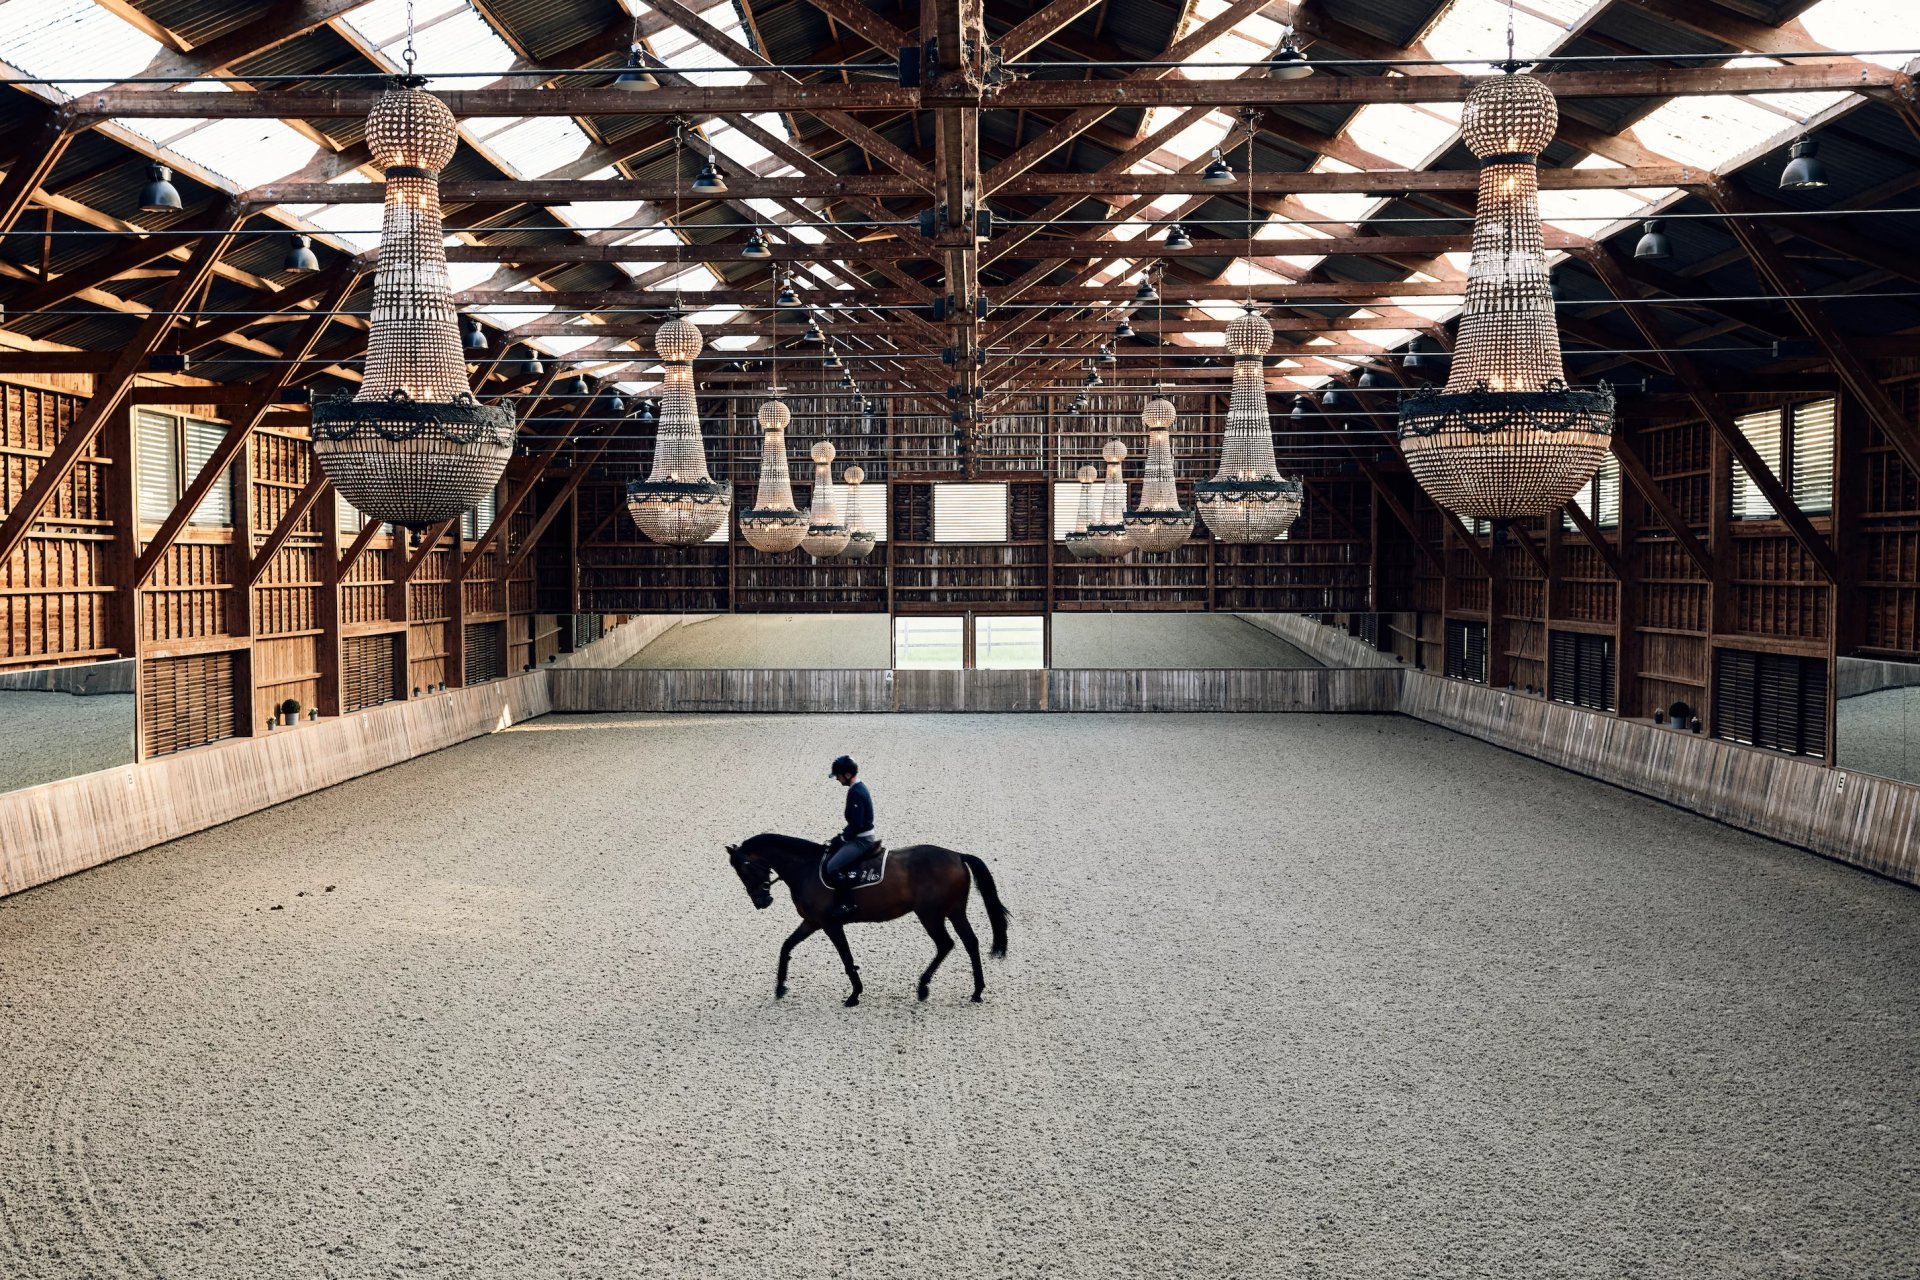 Indoor horse arena with chandeliers. 